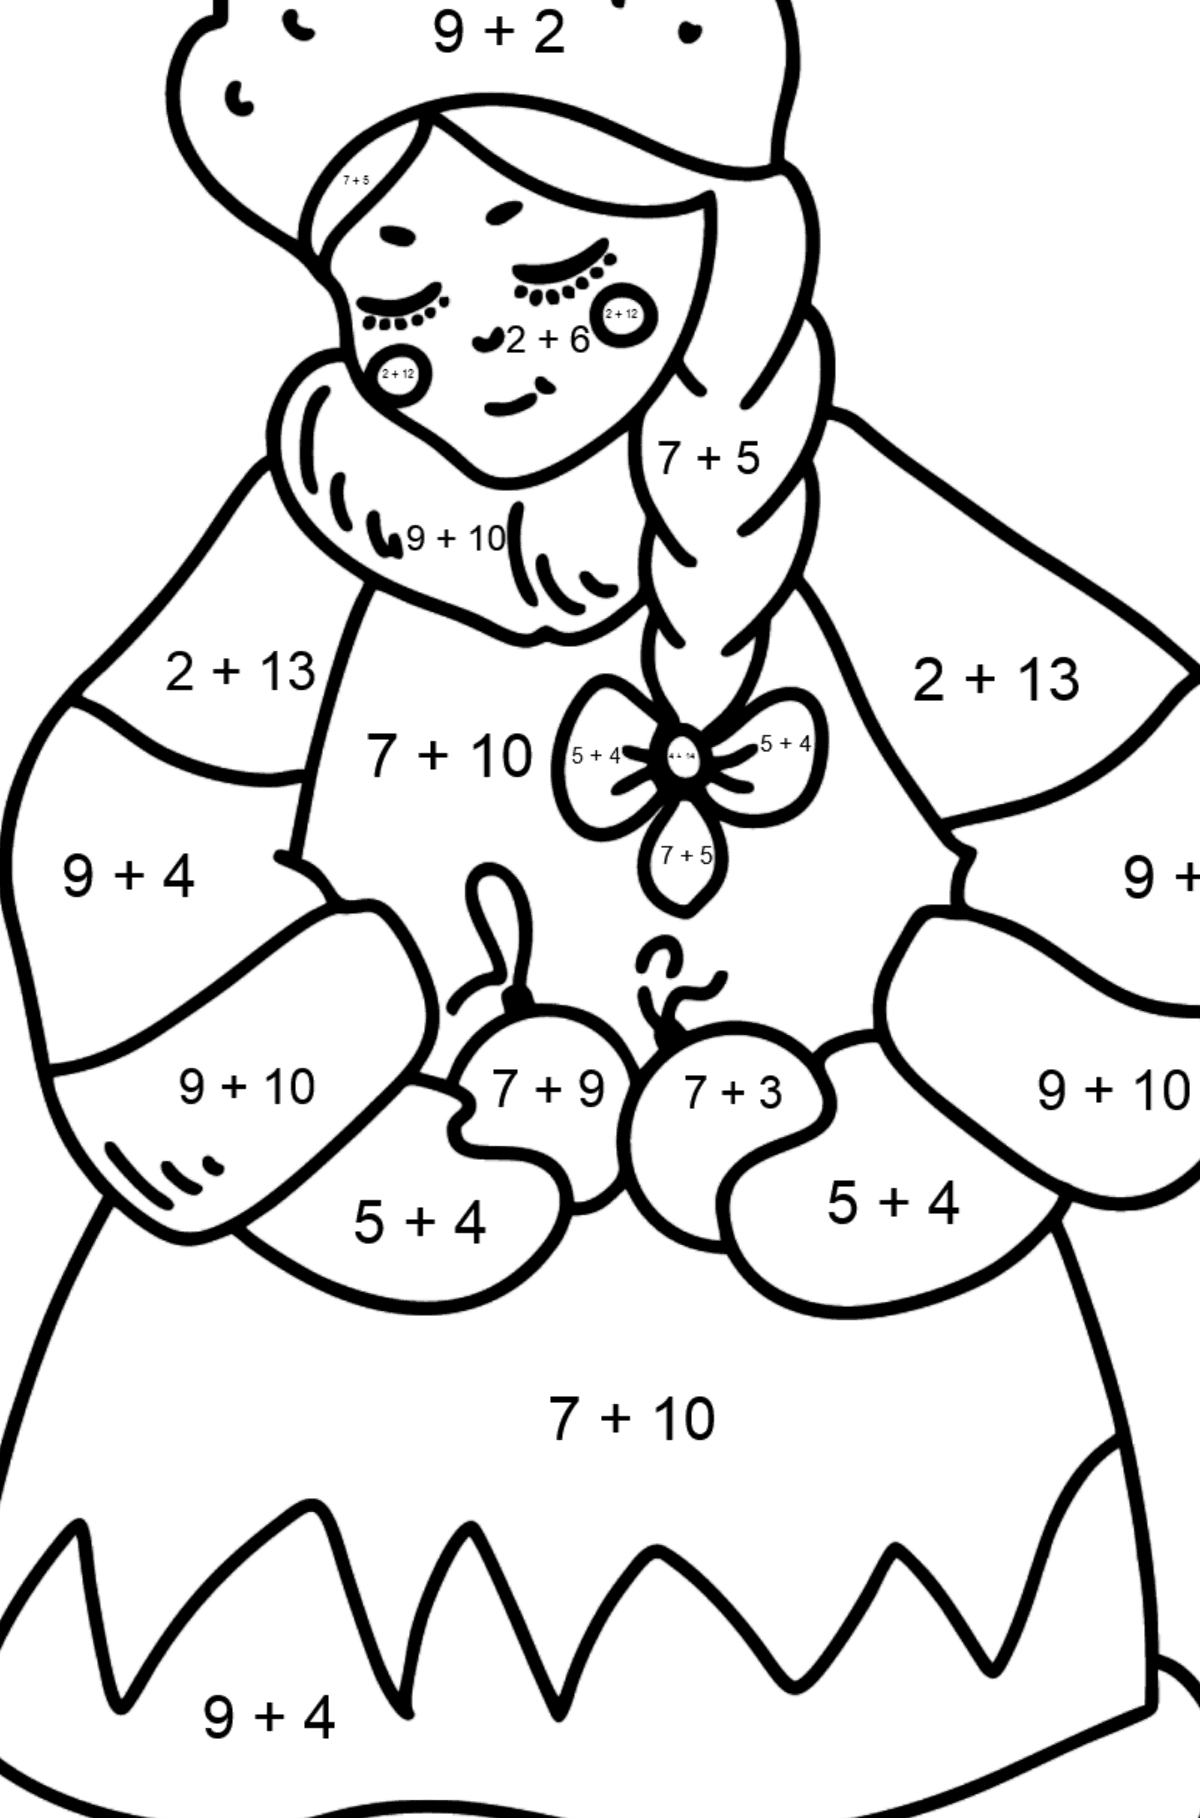 Mewarnai gambar putri Salju - Pewarnaan Matematika: Pertambahan untuk anak-anak